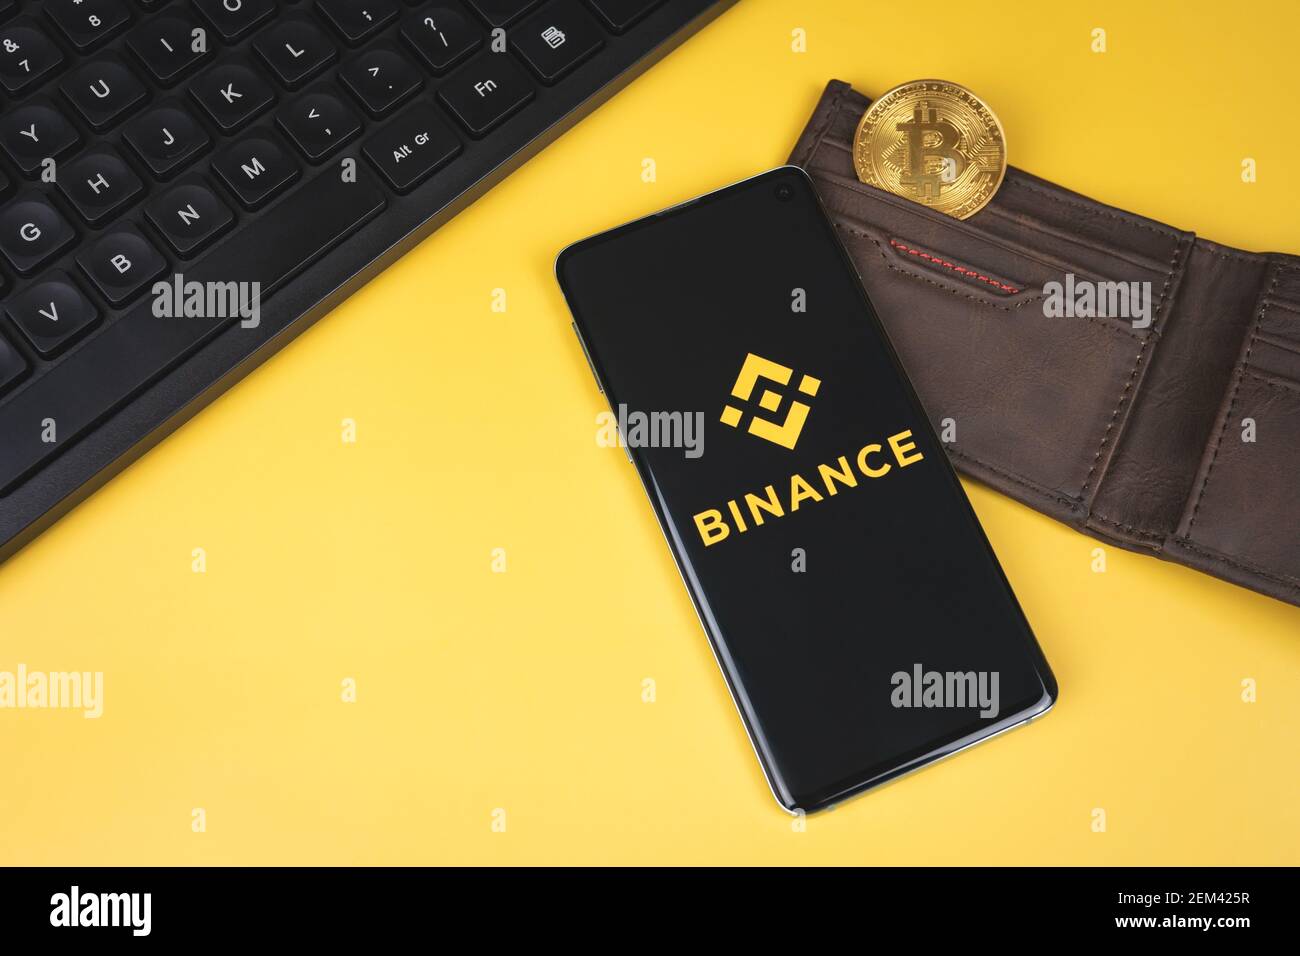 Logo dell'app mobile Binance su uno smartphone, portafoglio con Bitcoin oro  e tastiera su sfondo giallo Foto stock - Alamy